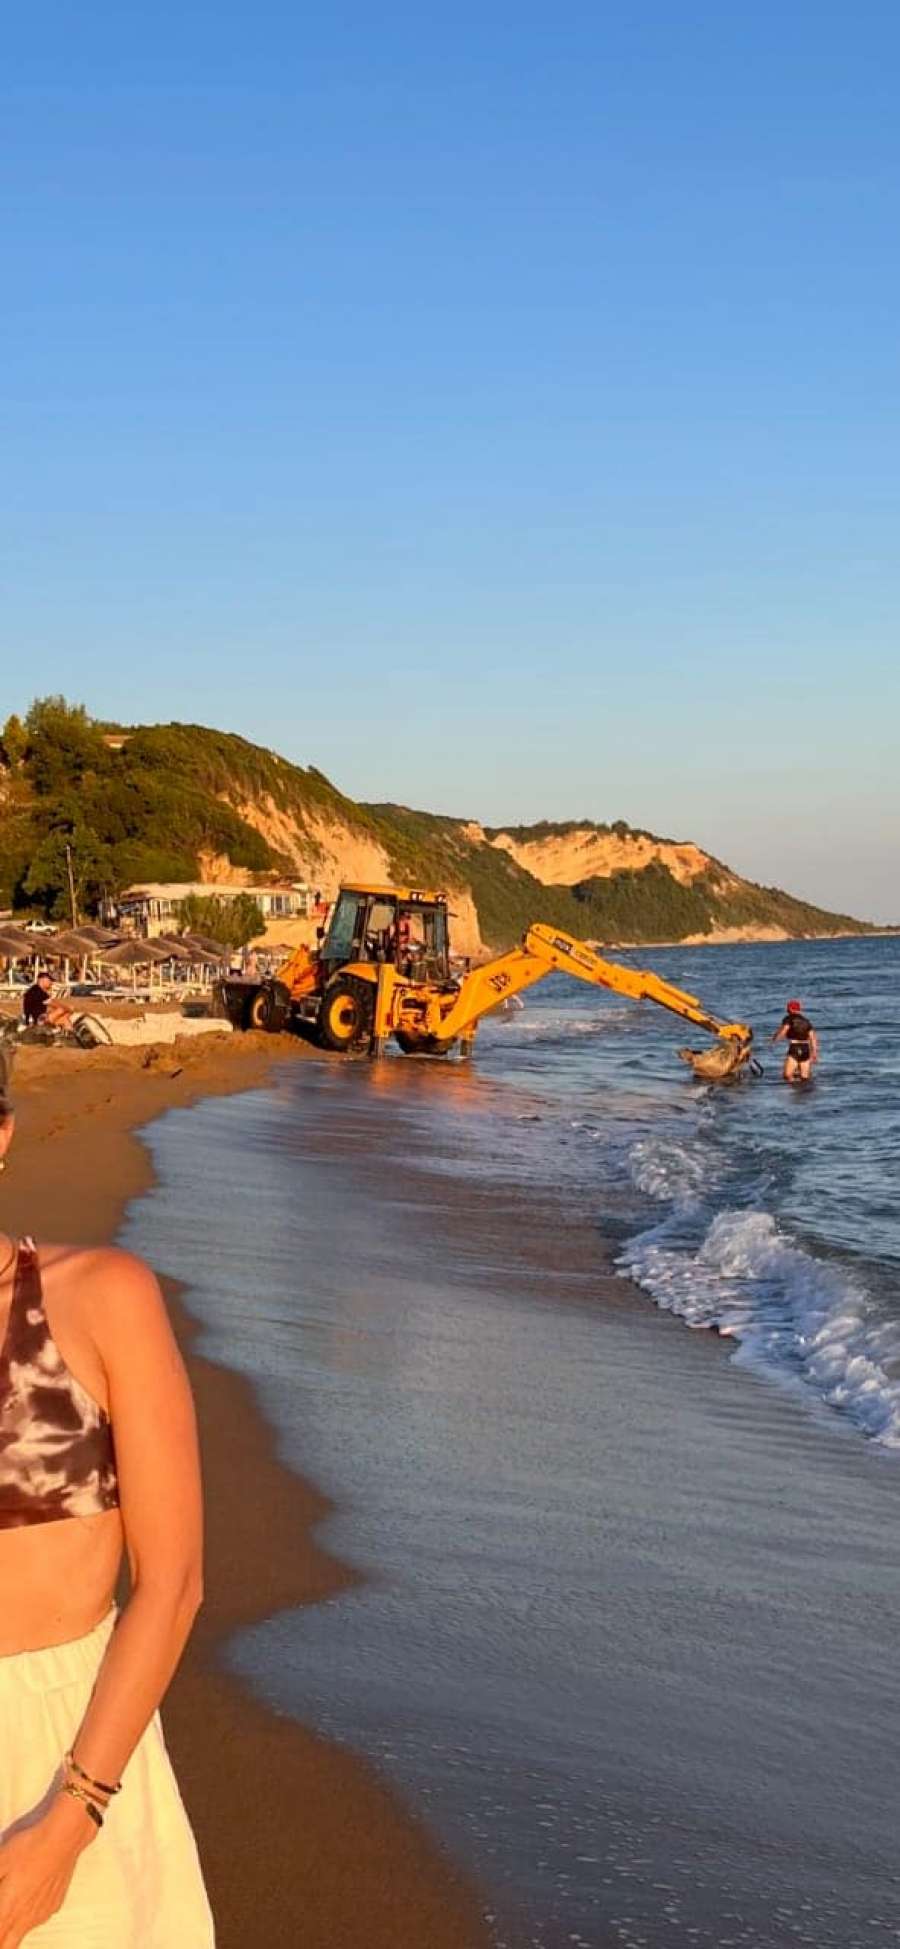 Κατακτητές - καταπατητές παραλιών με την ανοχή και ενοχή του Δήμου Νότιας Κέρκυρας - Μπουλνόζες στην παραλία του Μαραθιά!